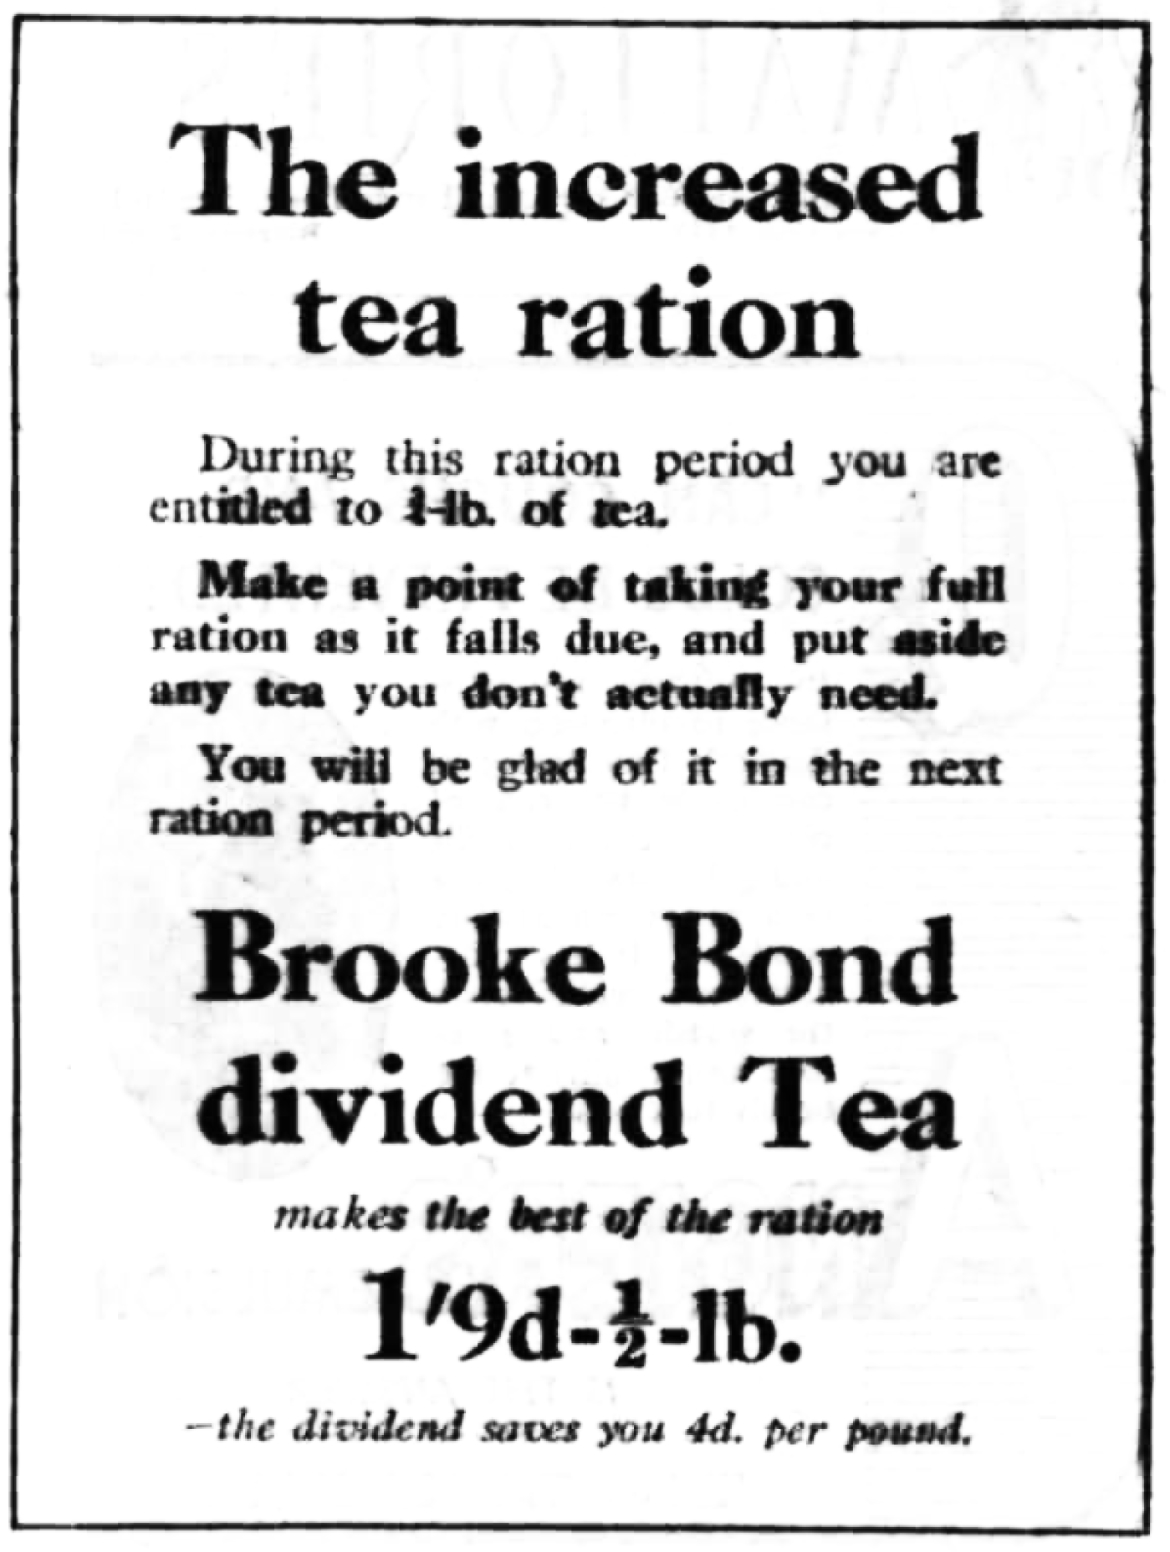 Brooke Bond dividend tea